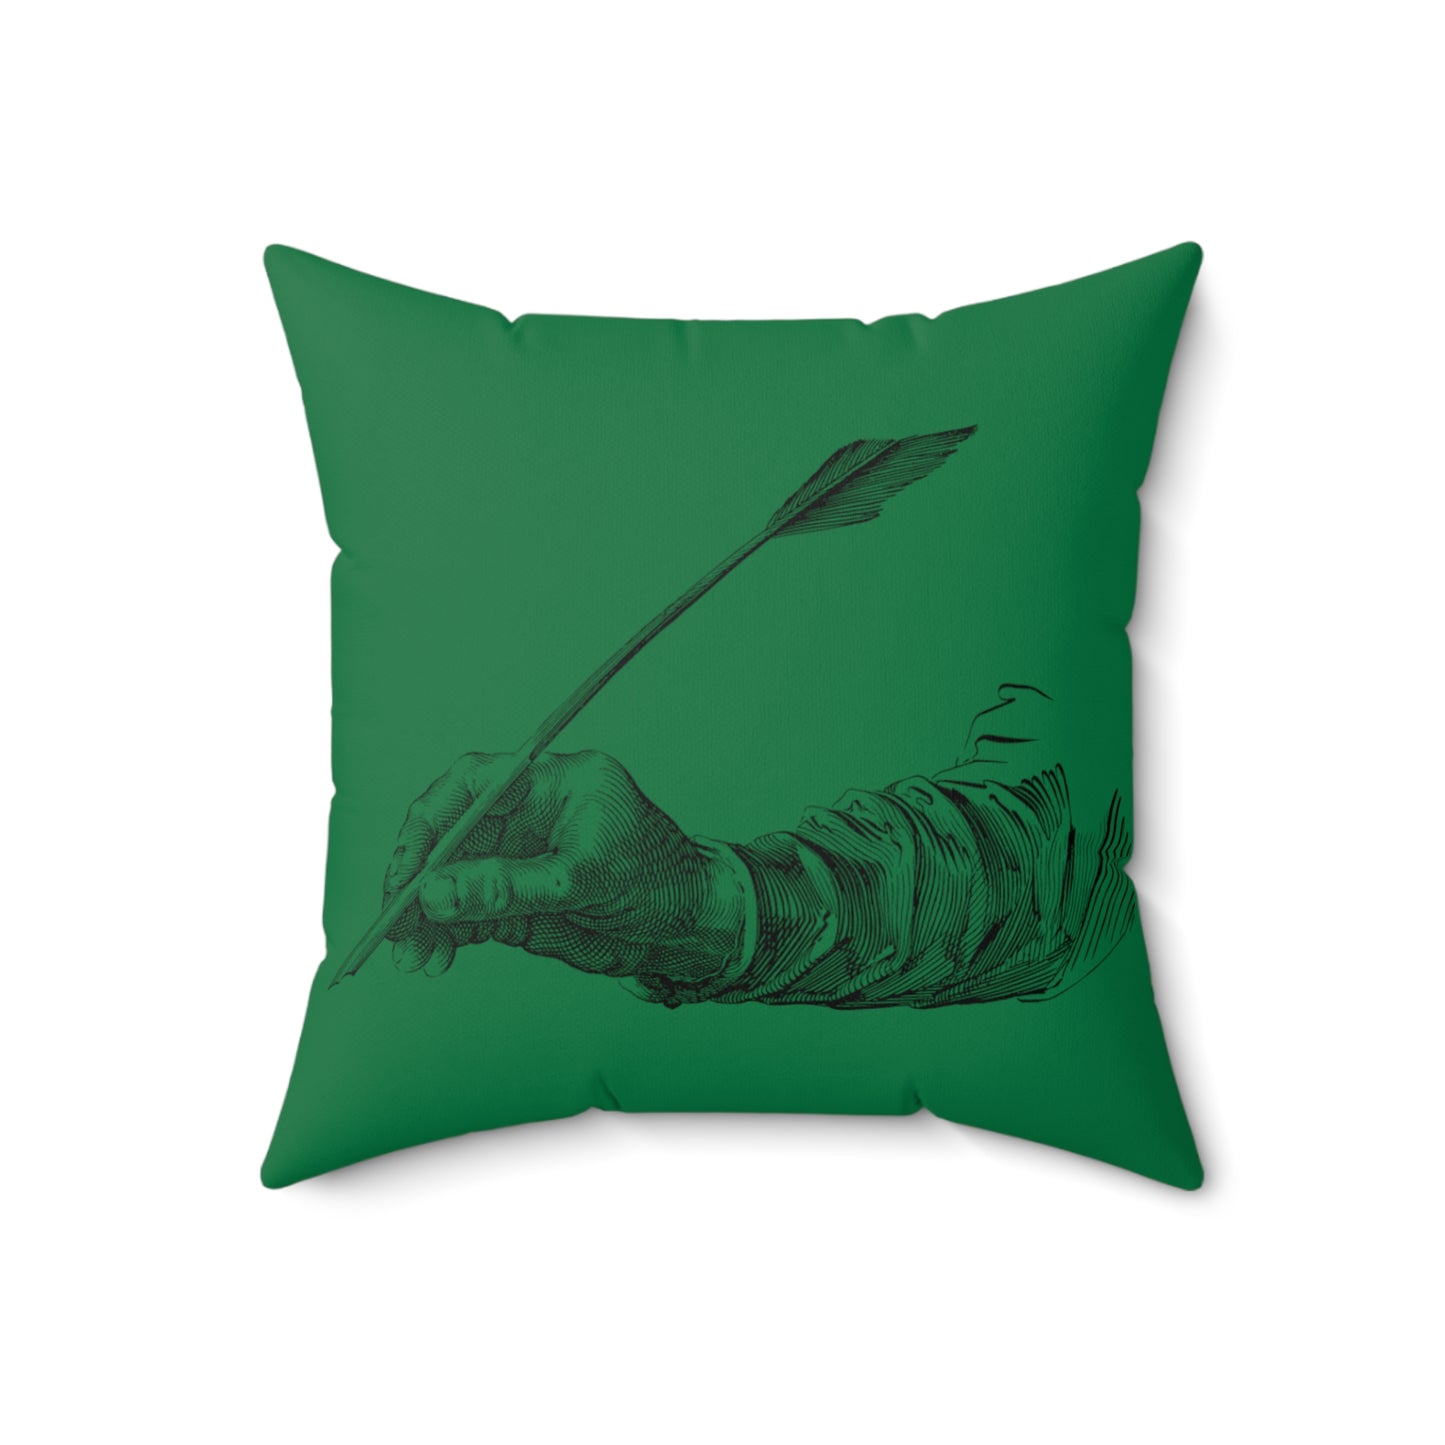 Spun Polyester Square Pillow: Writing Dark Green